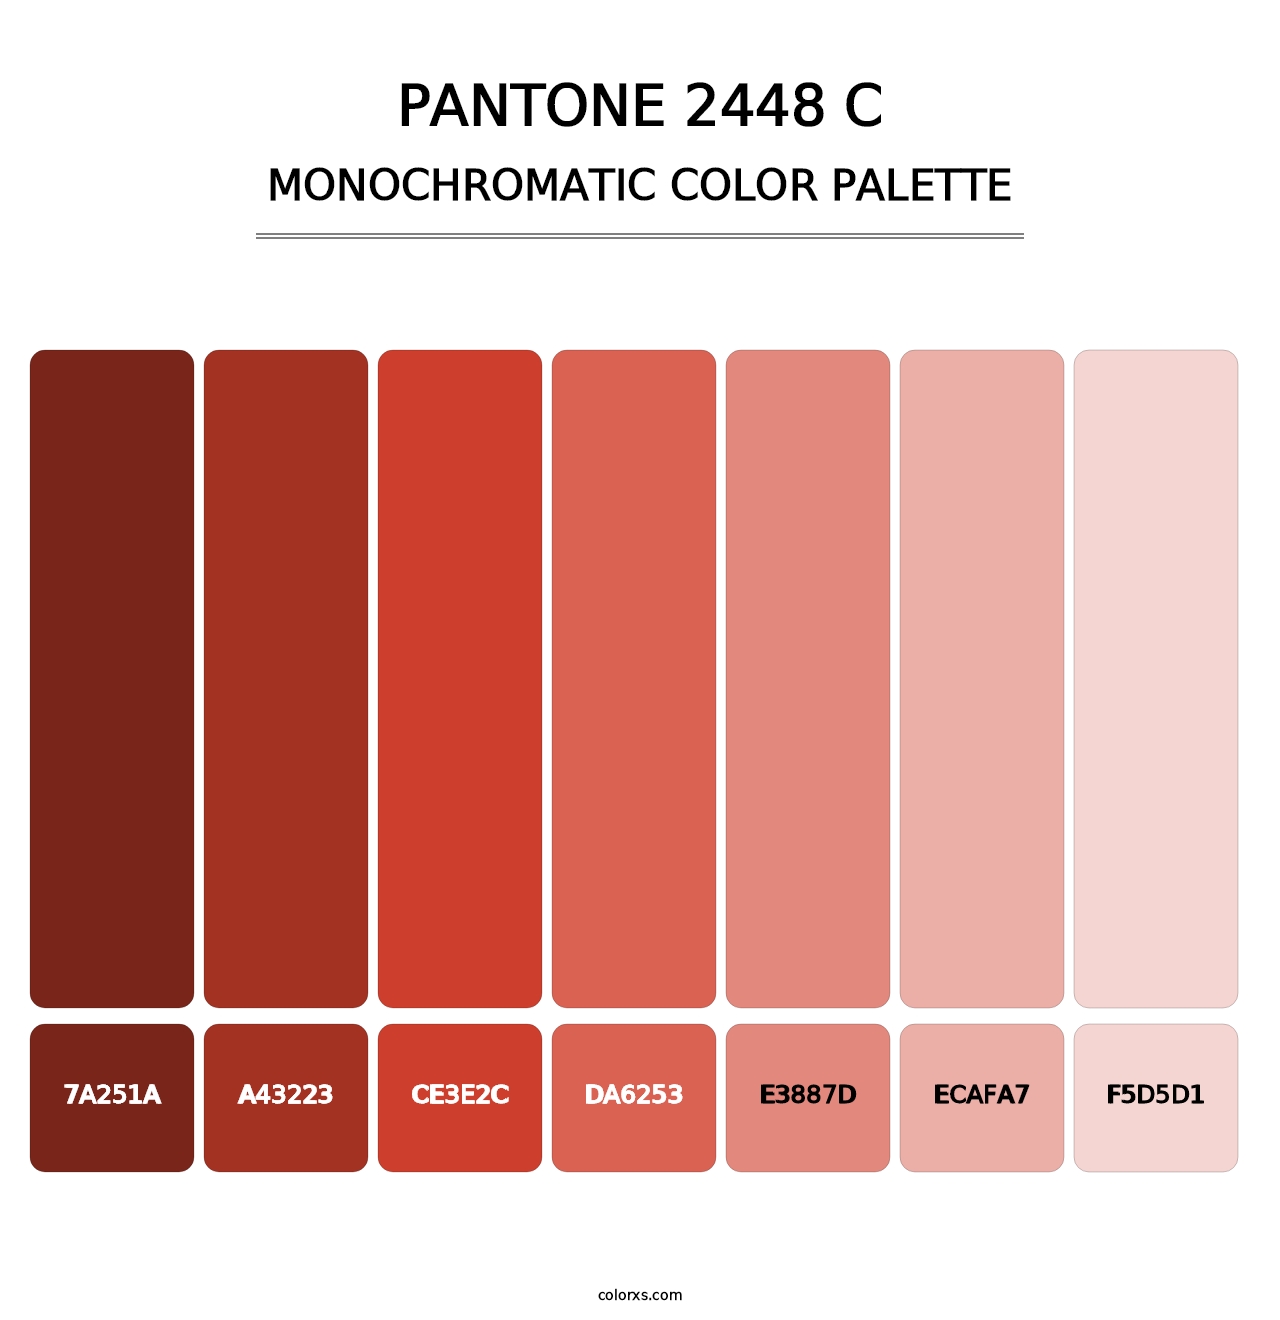 PANTONE 2448 C - Monochromatic Color Palette